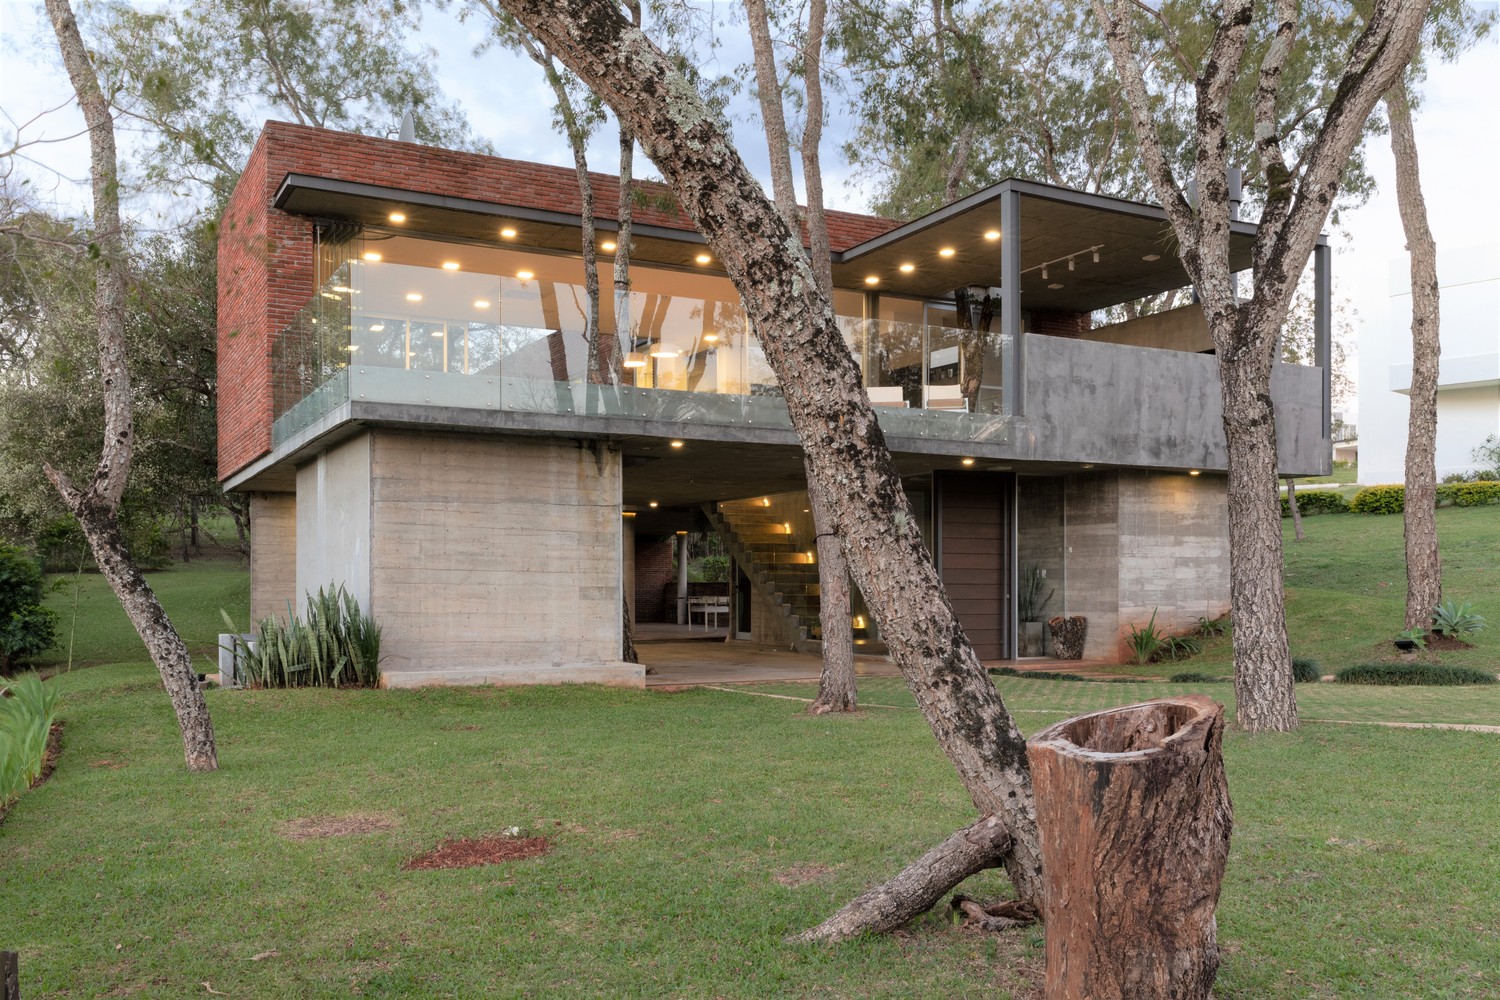 La casa AVJG - Construcciones modernas en Paraguay - Mundo Fachadas